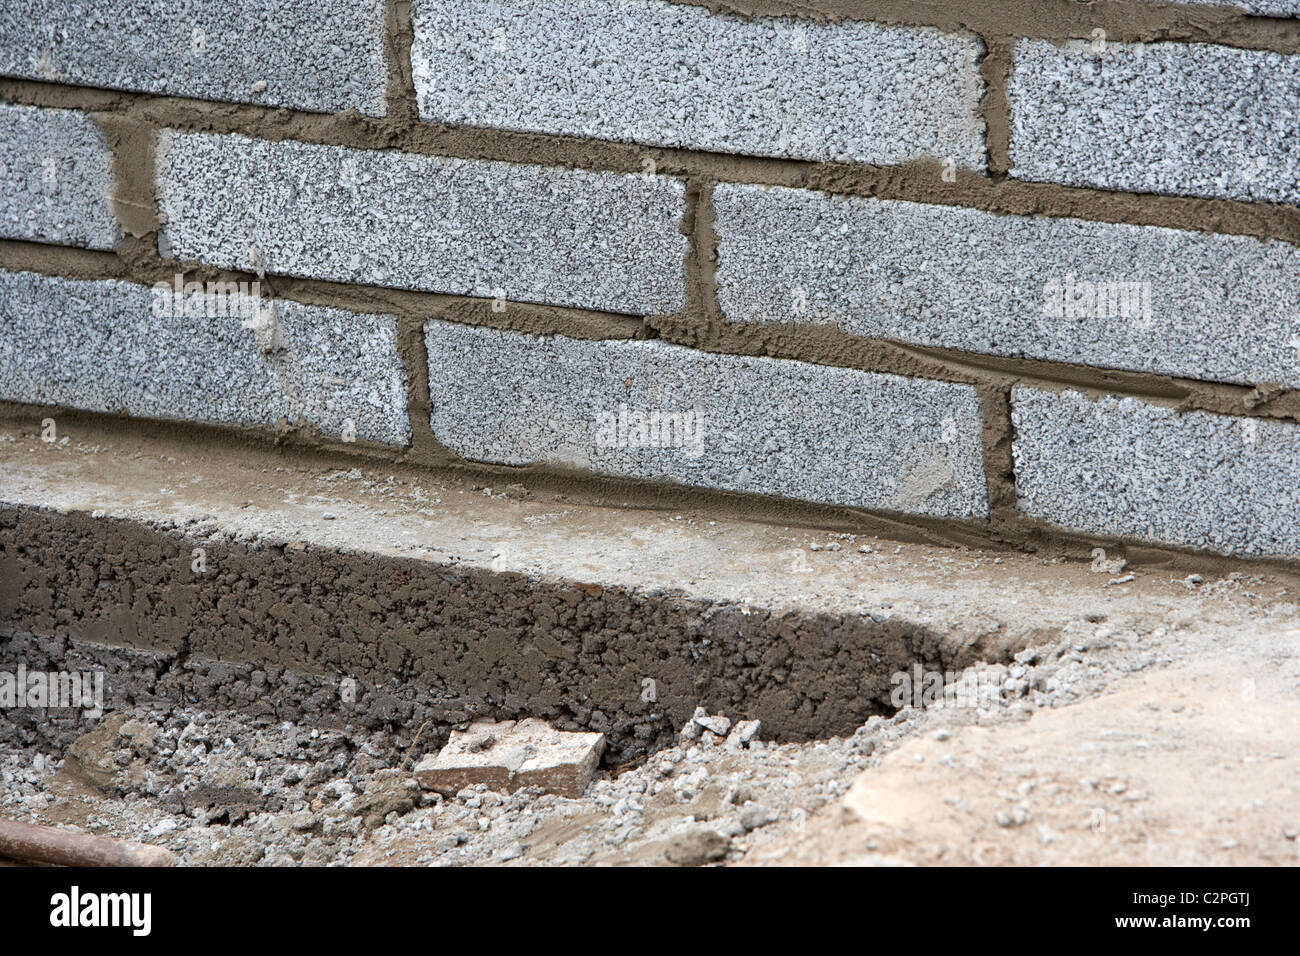 Con la mitad de la pared bricklaying brisa cemento bloquea la construcción de un muro de contención en bloque las cimentaciones de hormigón en el reino unido Foto de stock